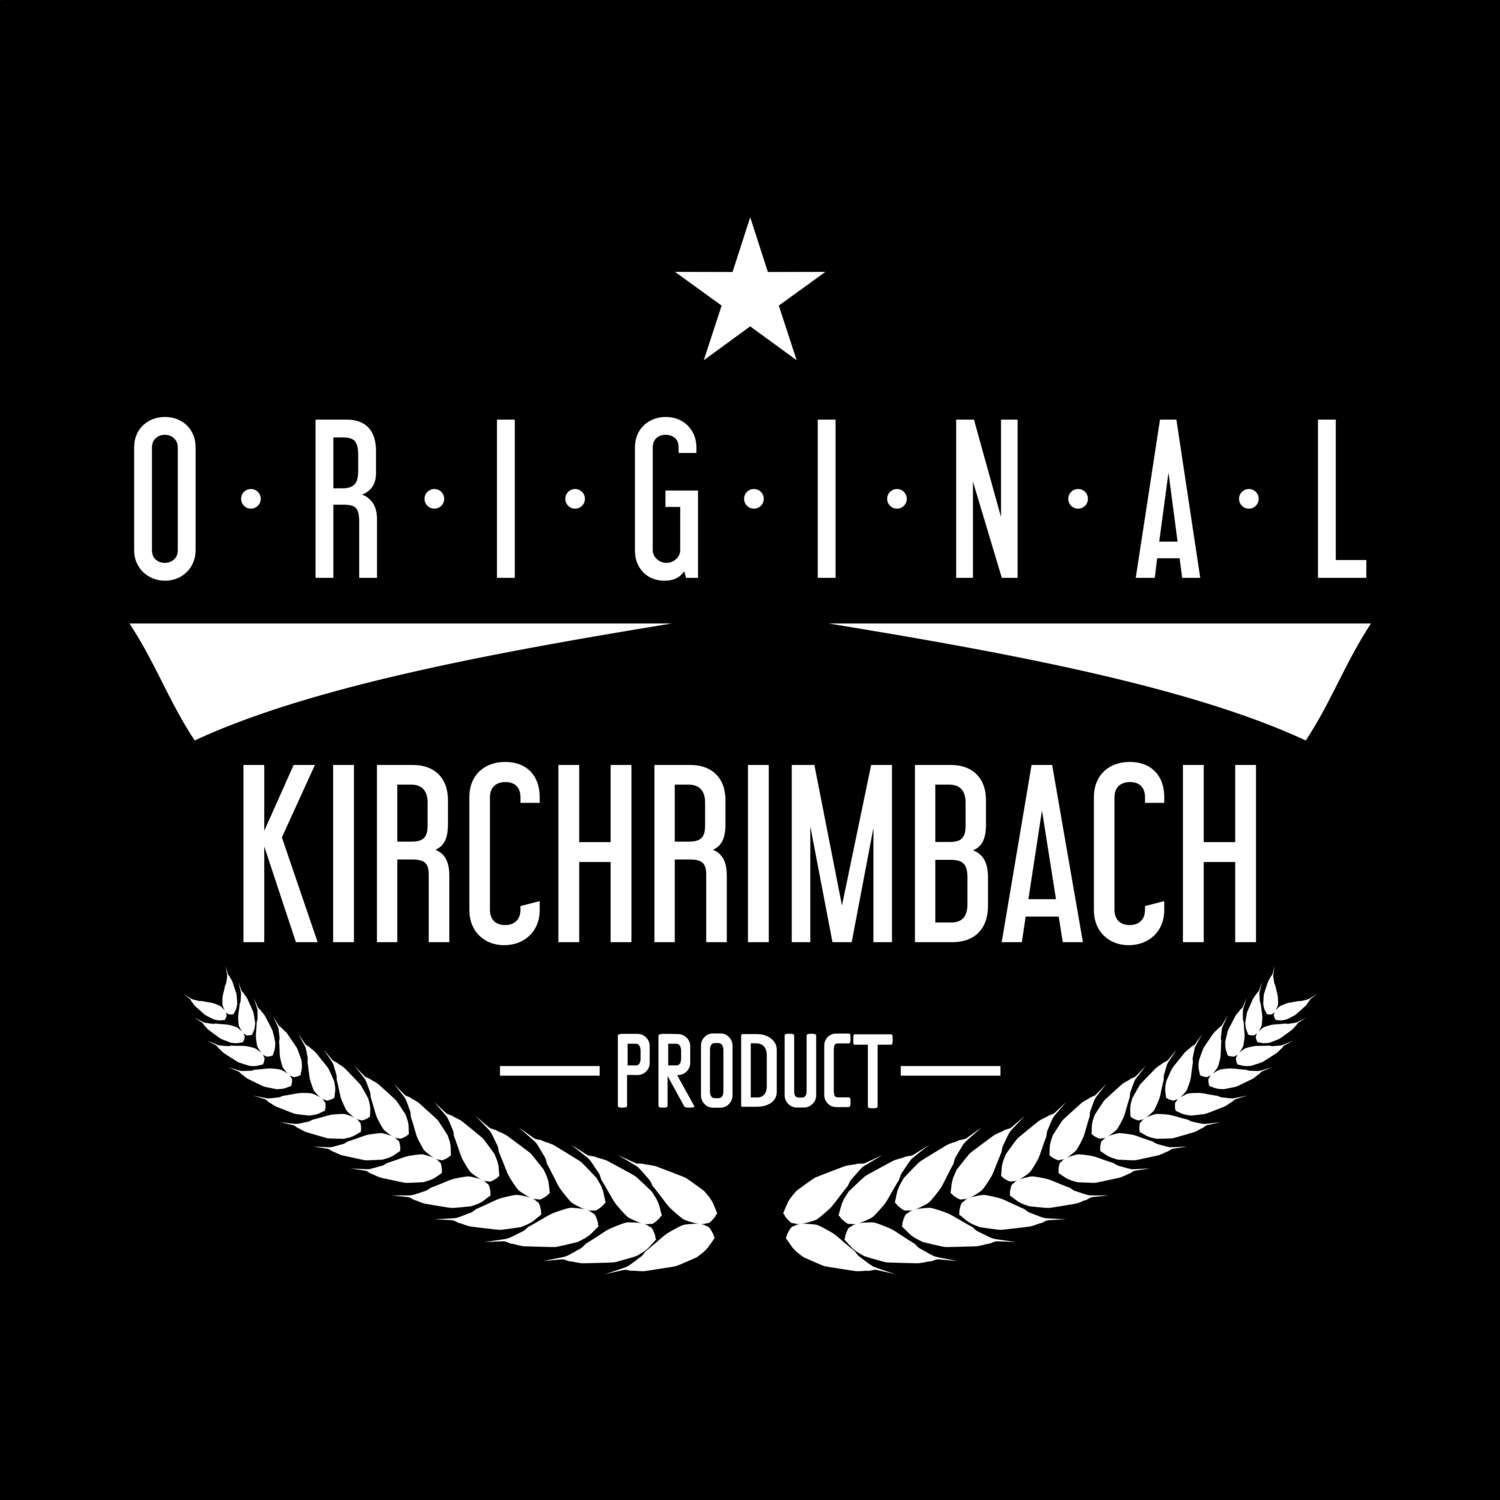 Kirchrimbach T-Shirt »Original Product«